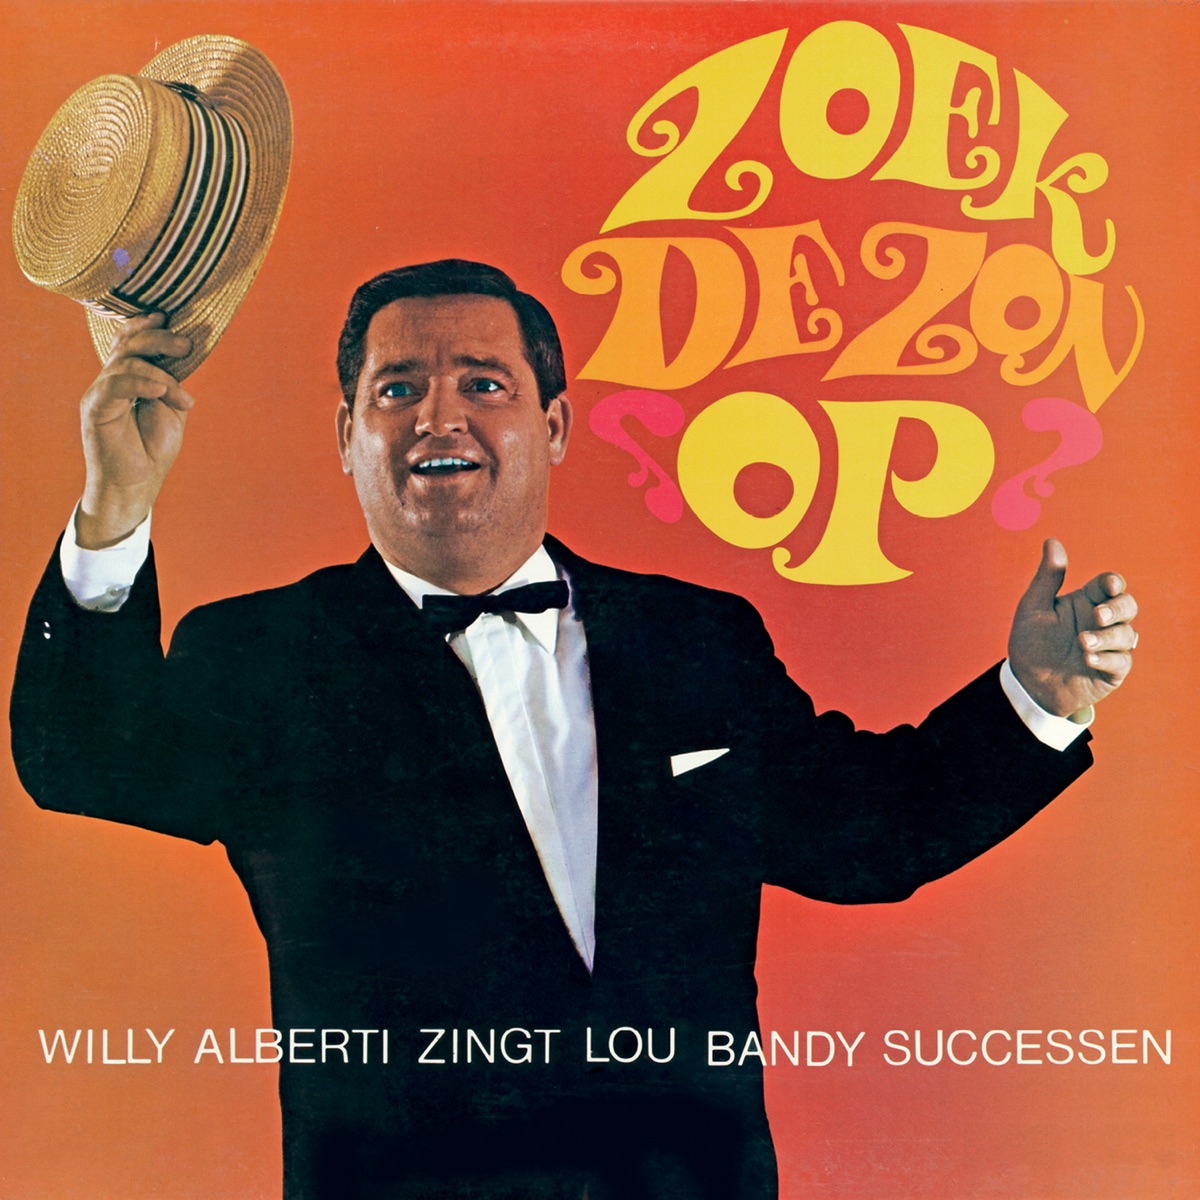 Zoek De Zon Op by Willy Alberti on Apple Music